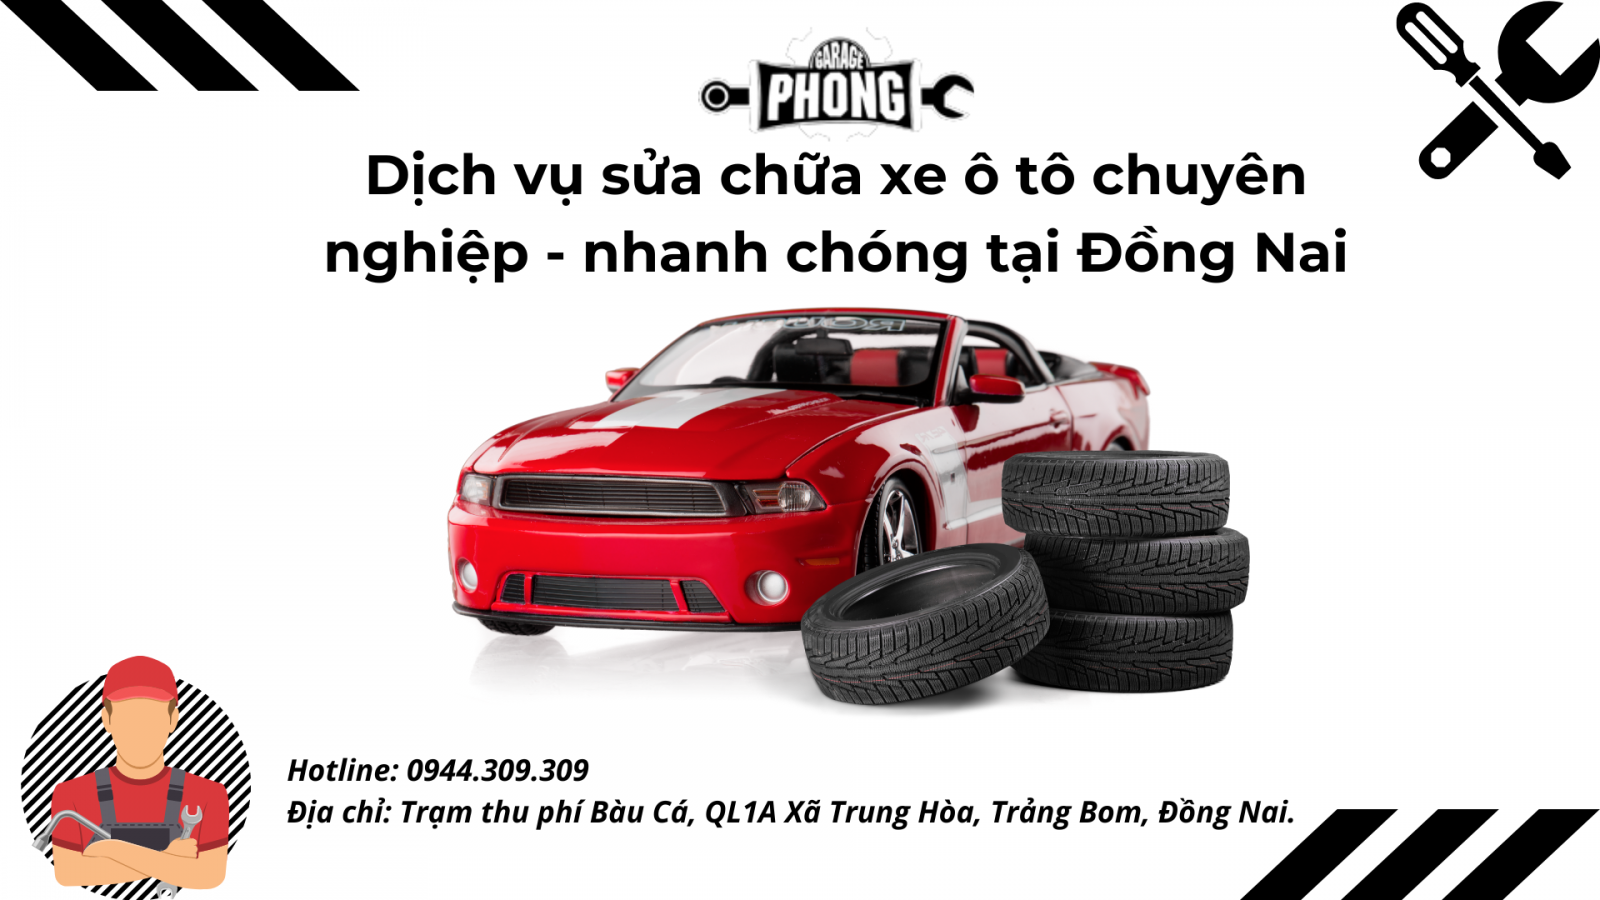 Garage Phong - cung cấp các dịch vụ sửa chữa xe tại Đồng Nai